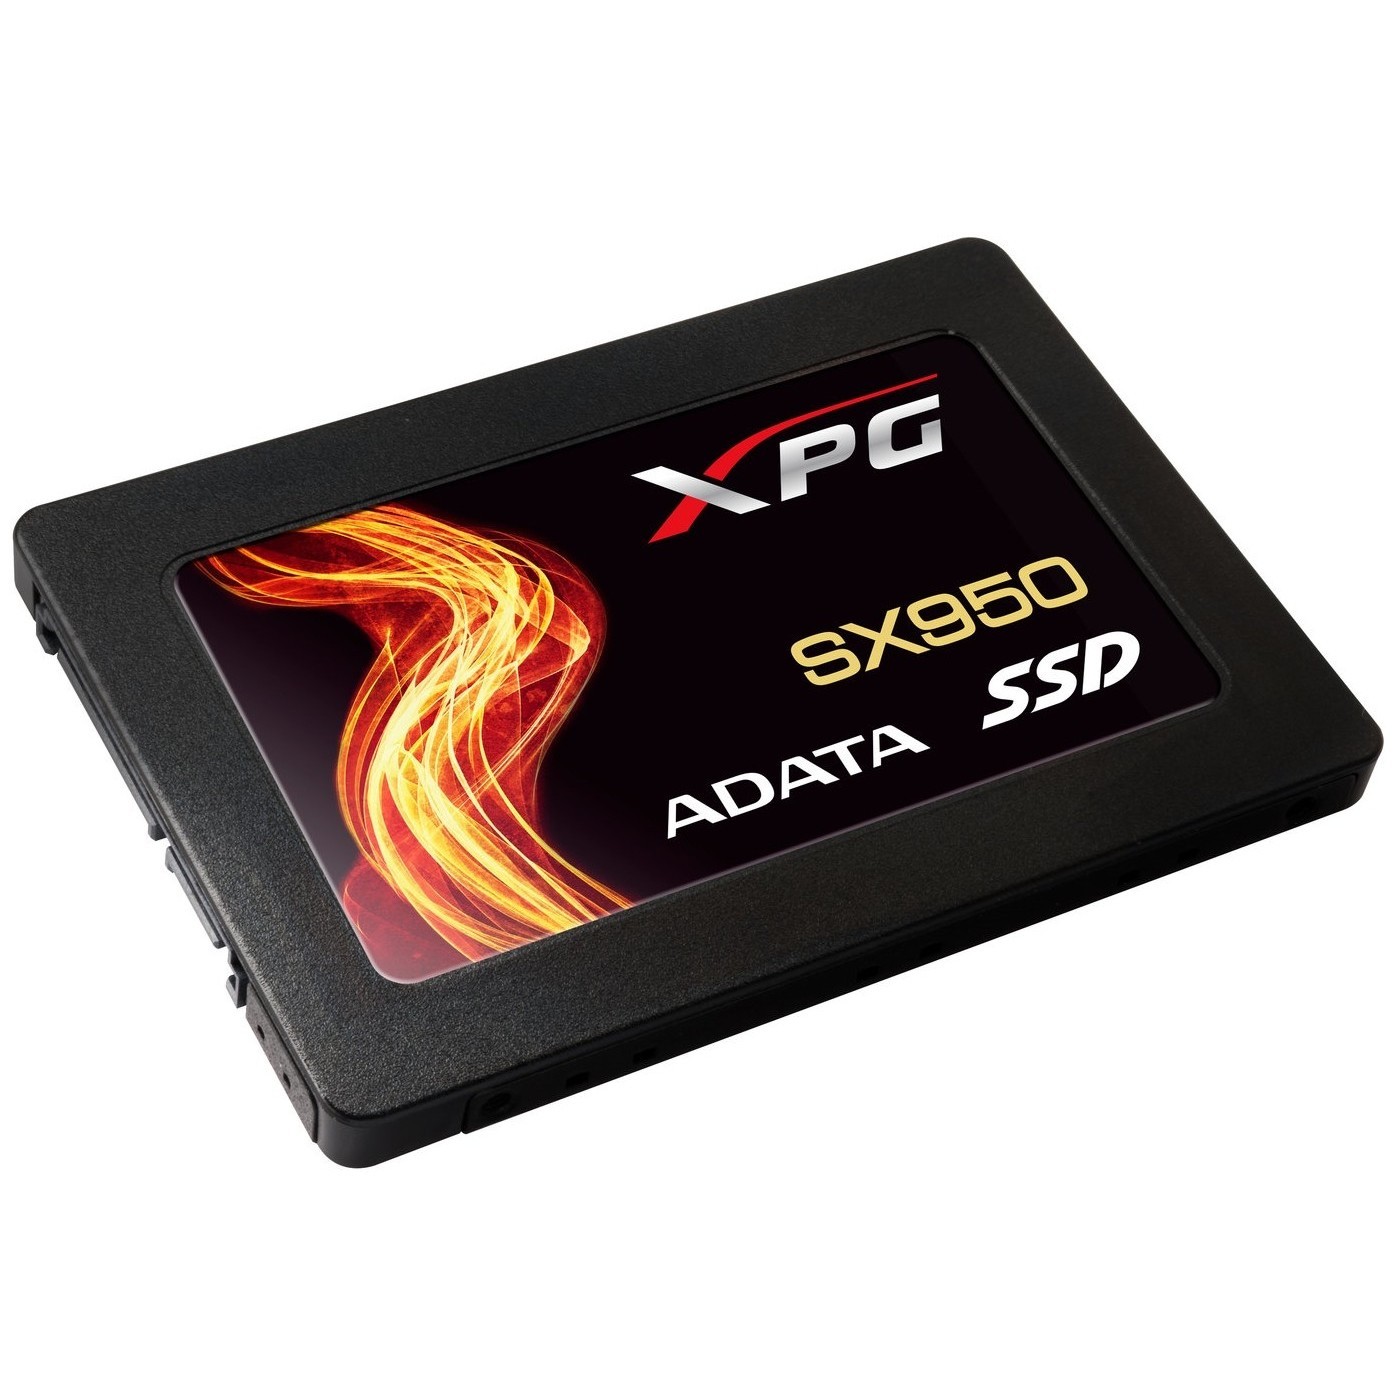 Ssd накопитель a data купить. Твердотельный накопитель ADATA XPG sx950 240gb. Твердотельный накопитель ADATA XPG sx950 960gb. SSD A data XPG. Внутренний SSD накопитель ADATA 960gb.